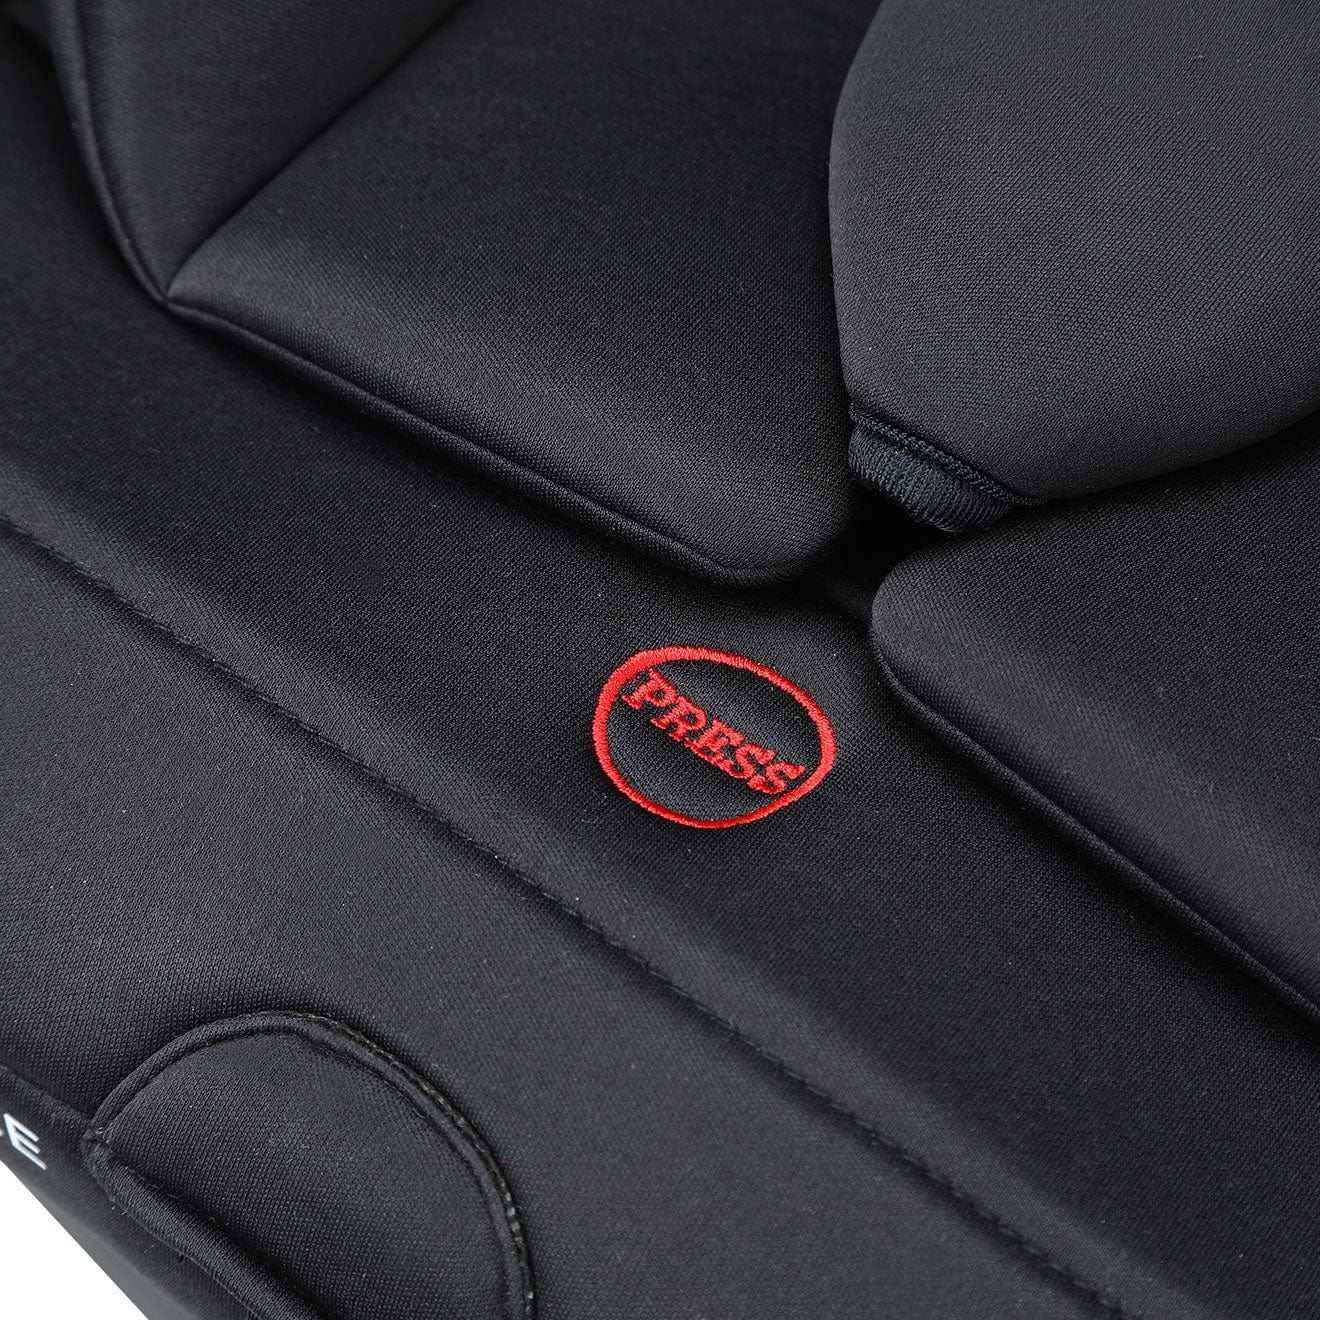 Cozy N Safe Combination Car Seats Cozy N Safe Fitzroy 40-135cm I-Size Child Car Seat- Onyx EST-913